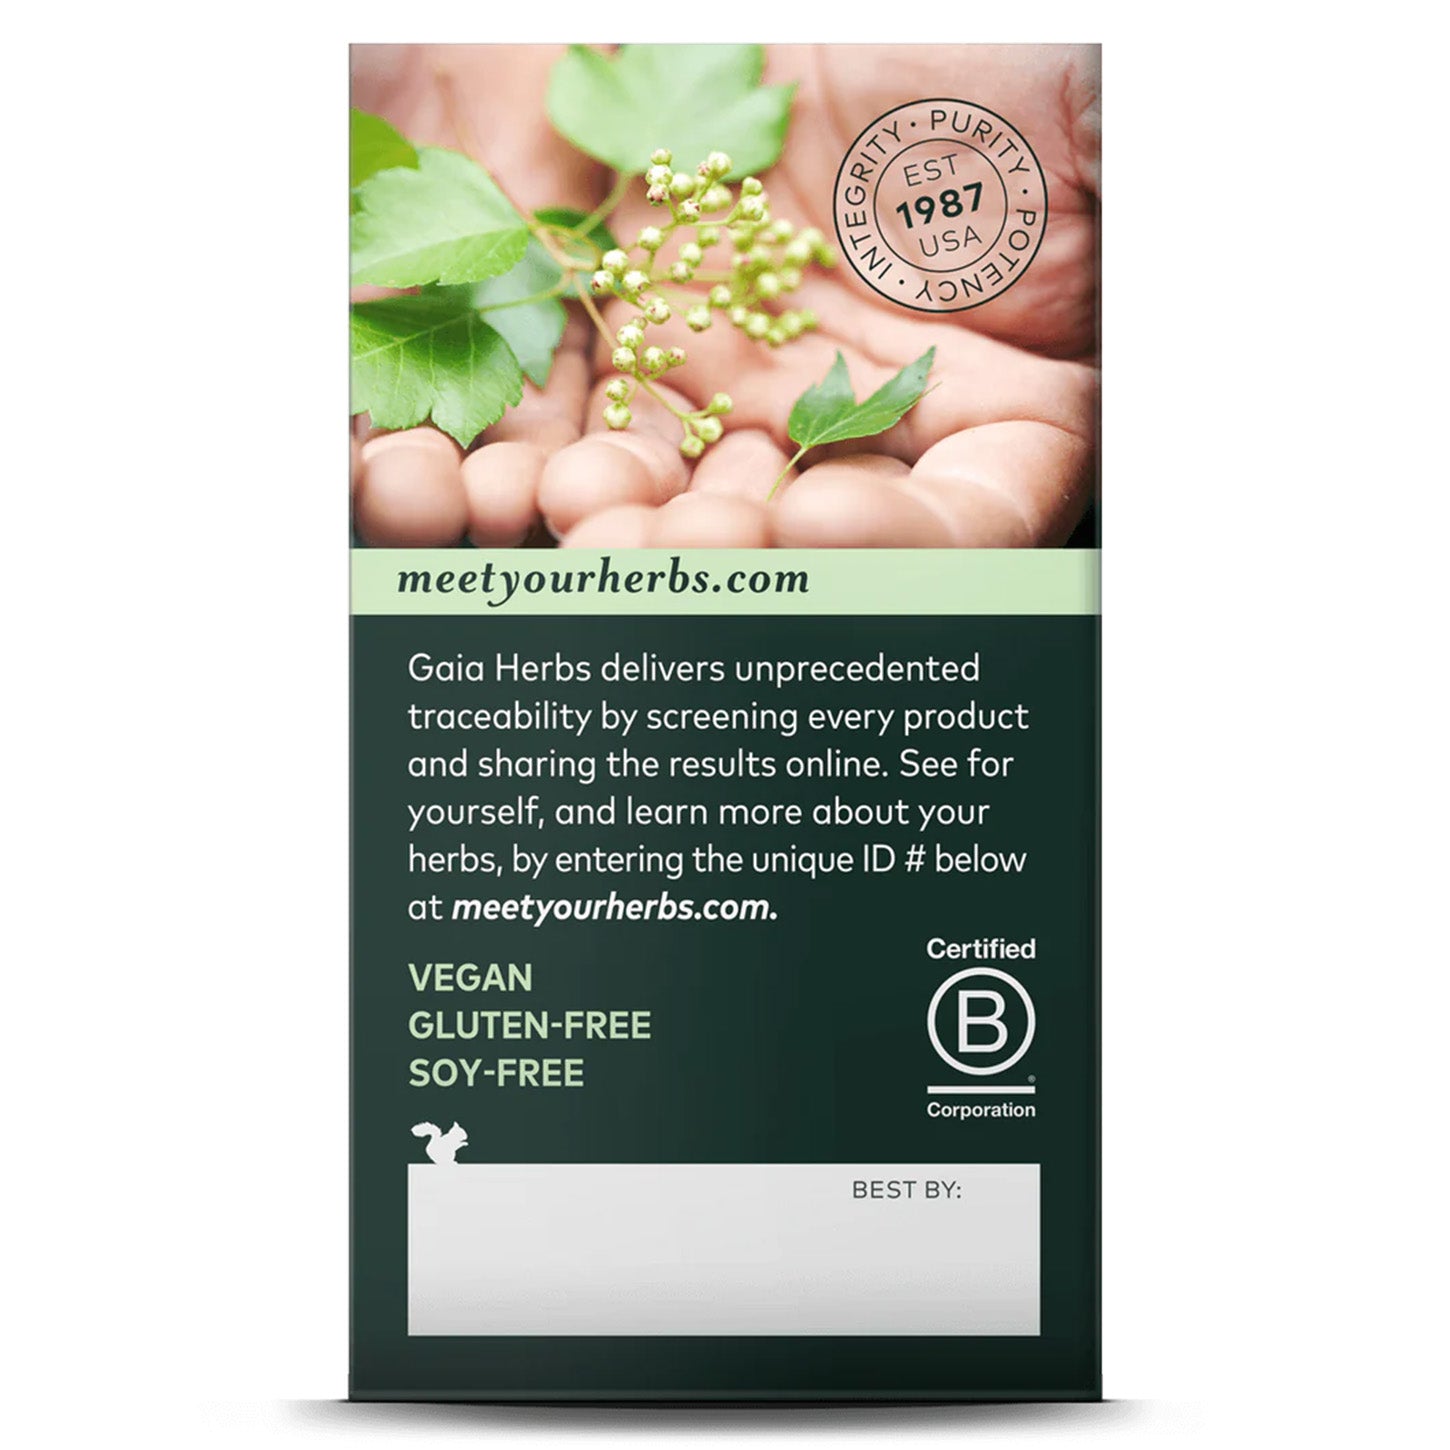 Gaia Herbs Nettle Leaf: Apoyo Herbal para tu Bienestar | ProHealth Shop [Panamá]